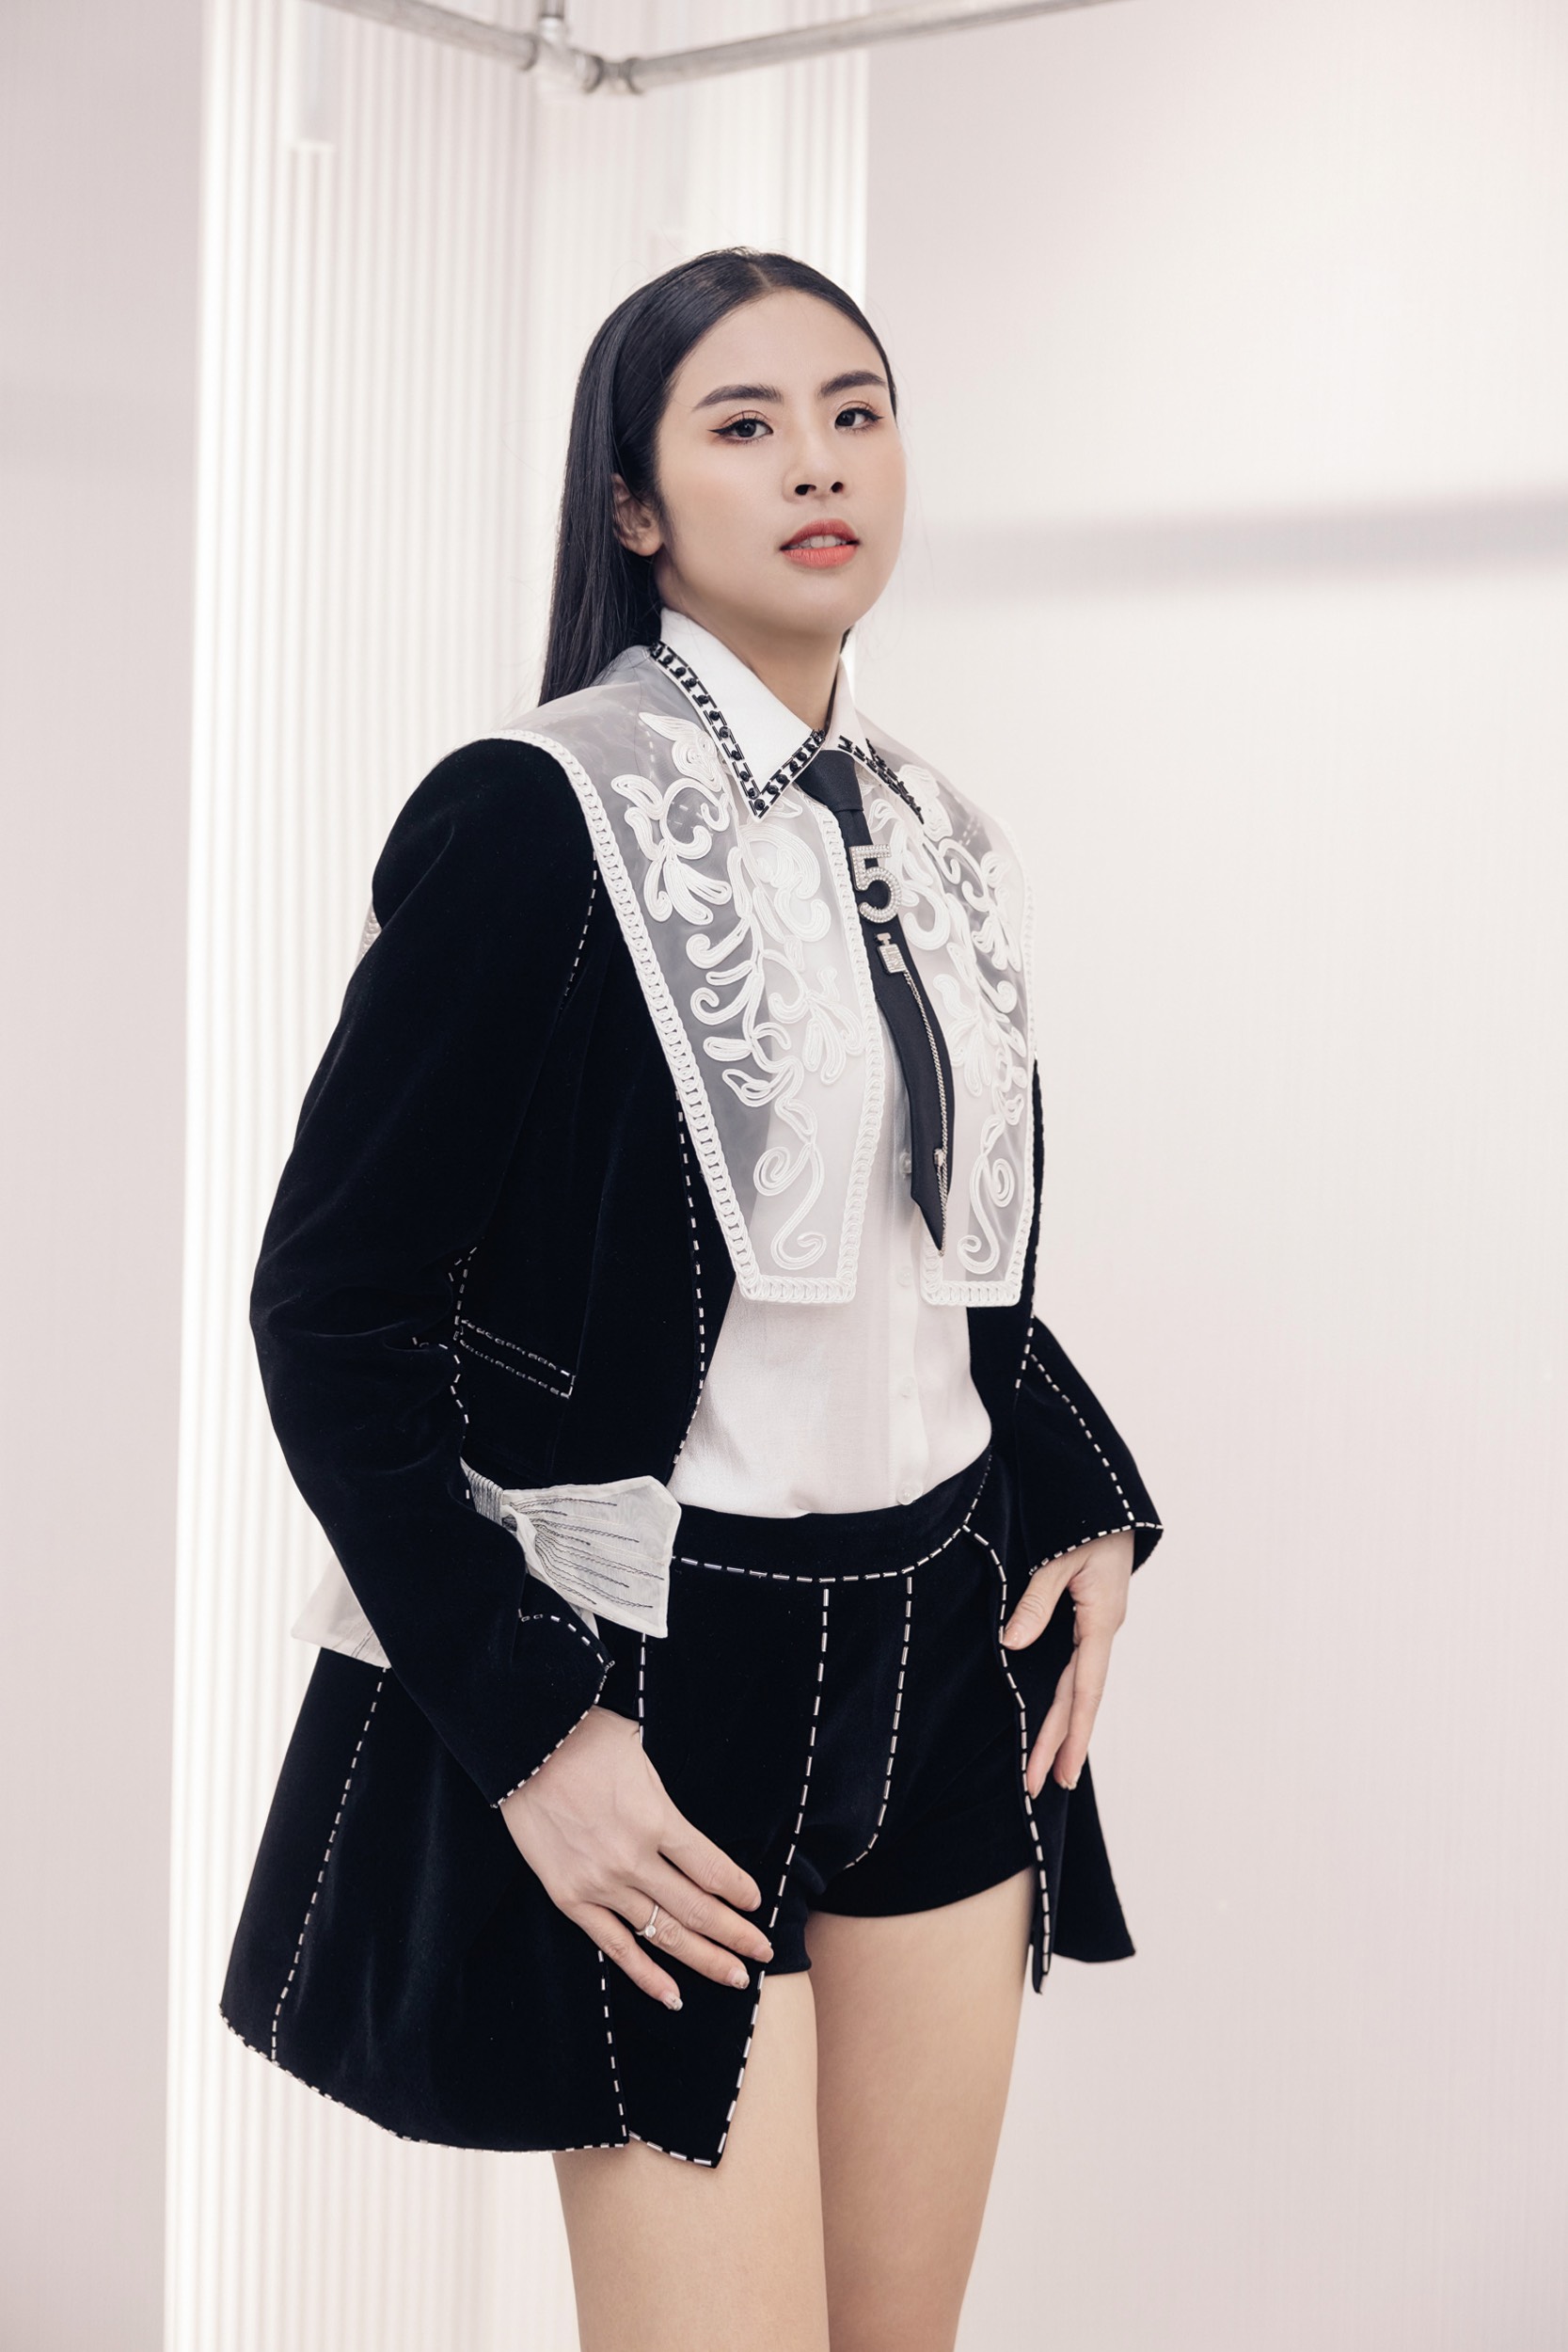 Hoa hậu Ngọc Hân cá tính trong mẫu trang phục mới nhất của Hà Duy. Ảnh: Trương Gia Huy